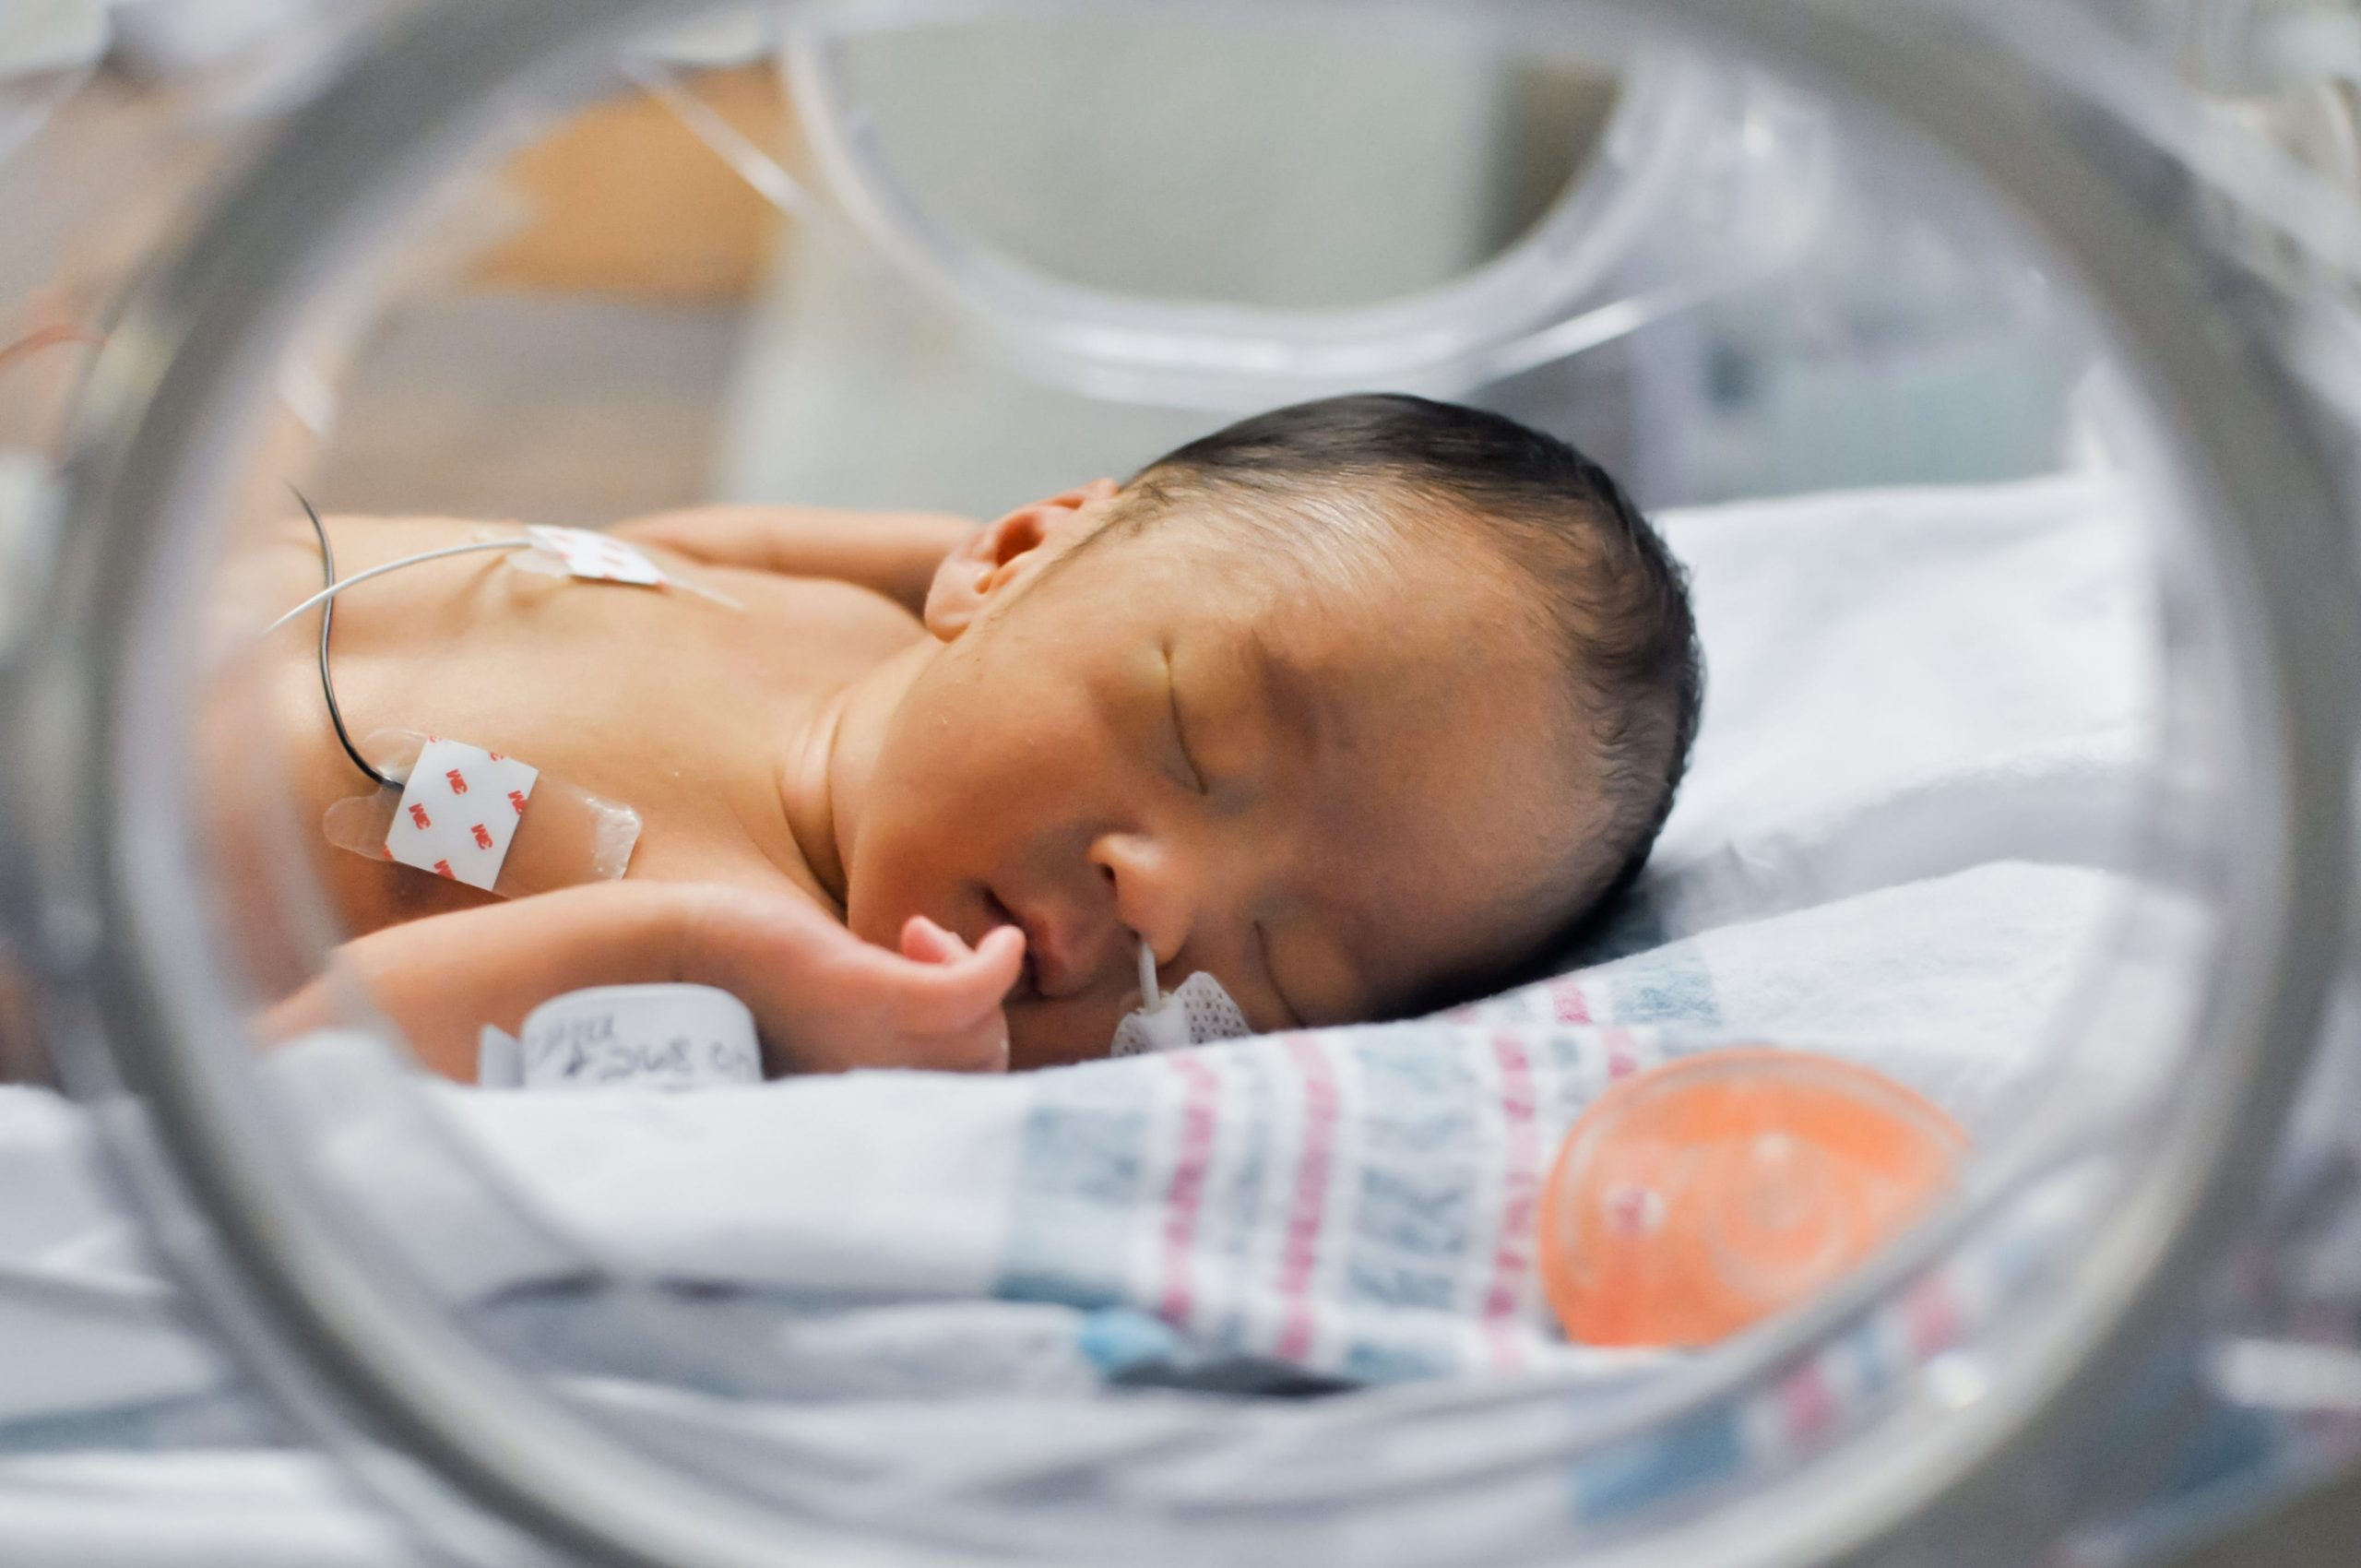 Newborn baby in incubator - STOCK PHOTO